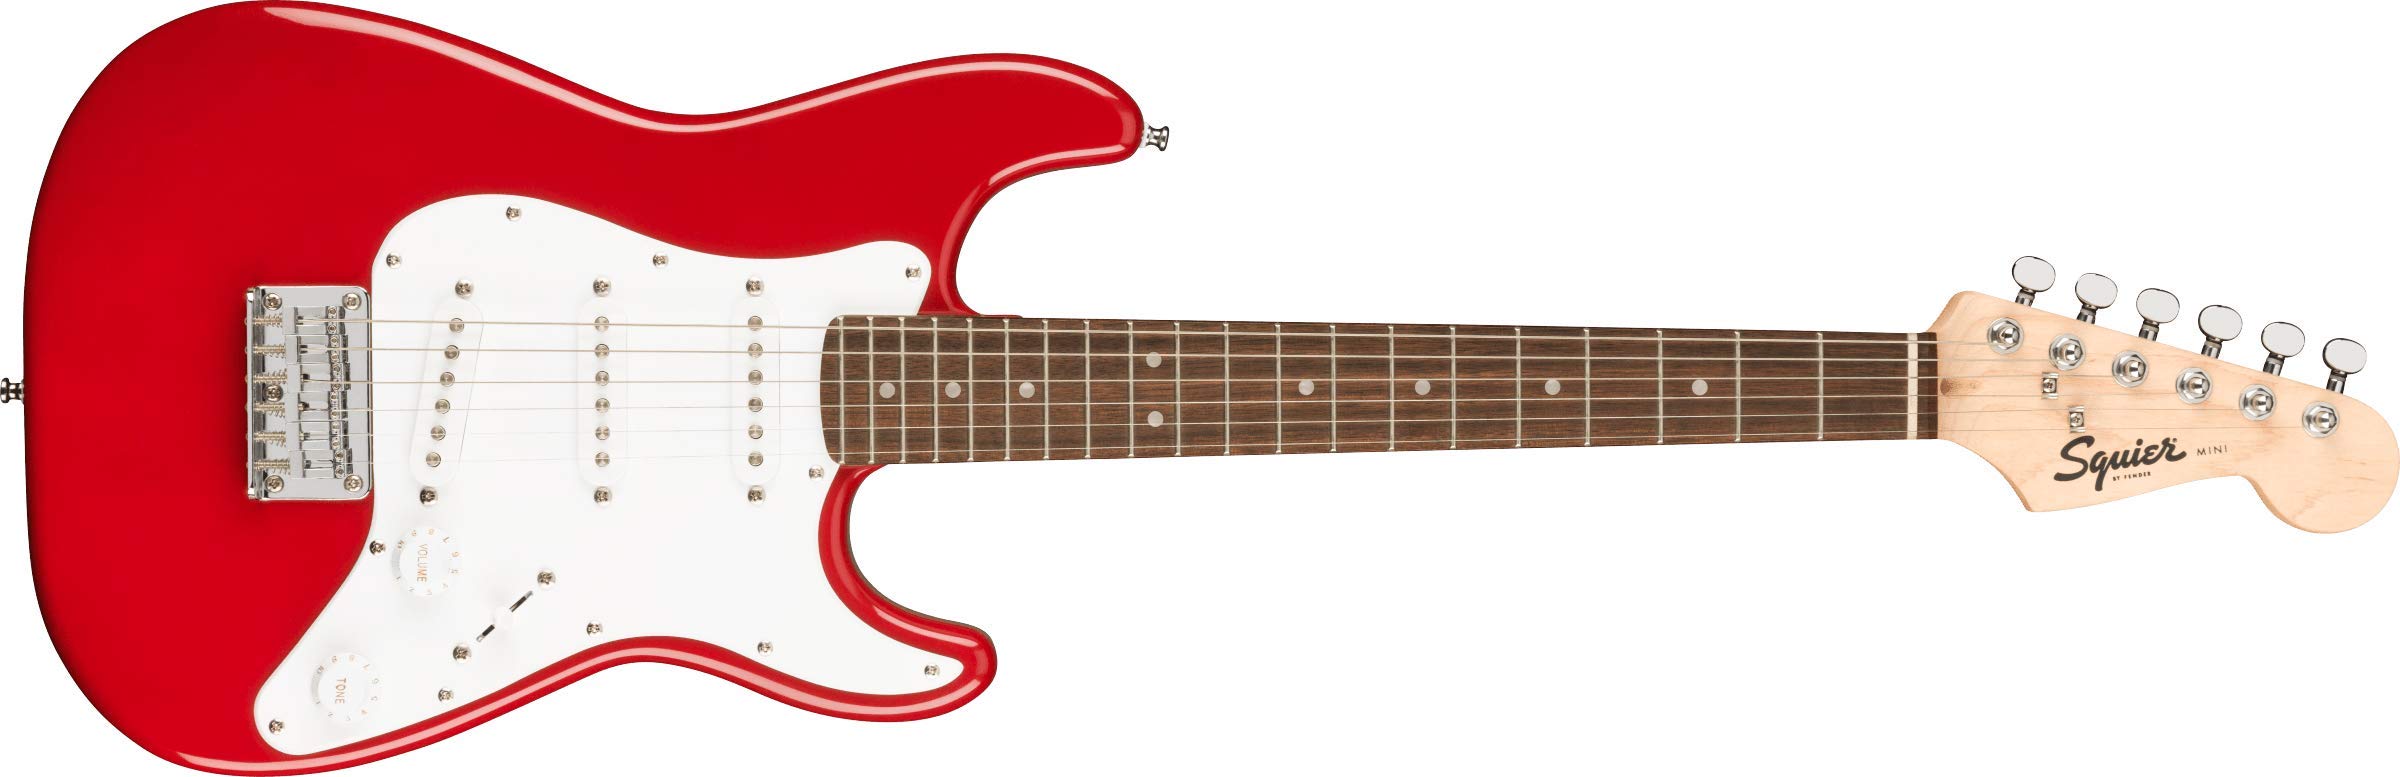 Squier 미니 스트랫 일렉트릭 기타 - 로렐 핑거보드가 있는 다코타 레드